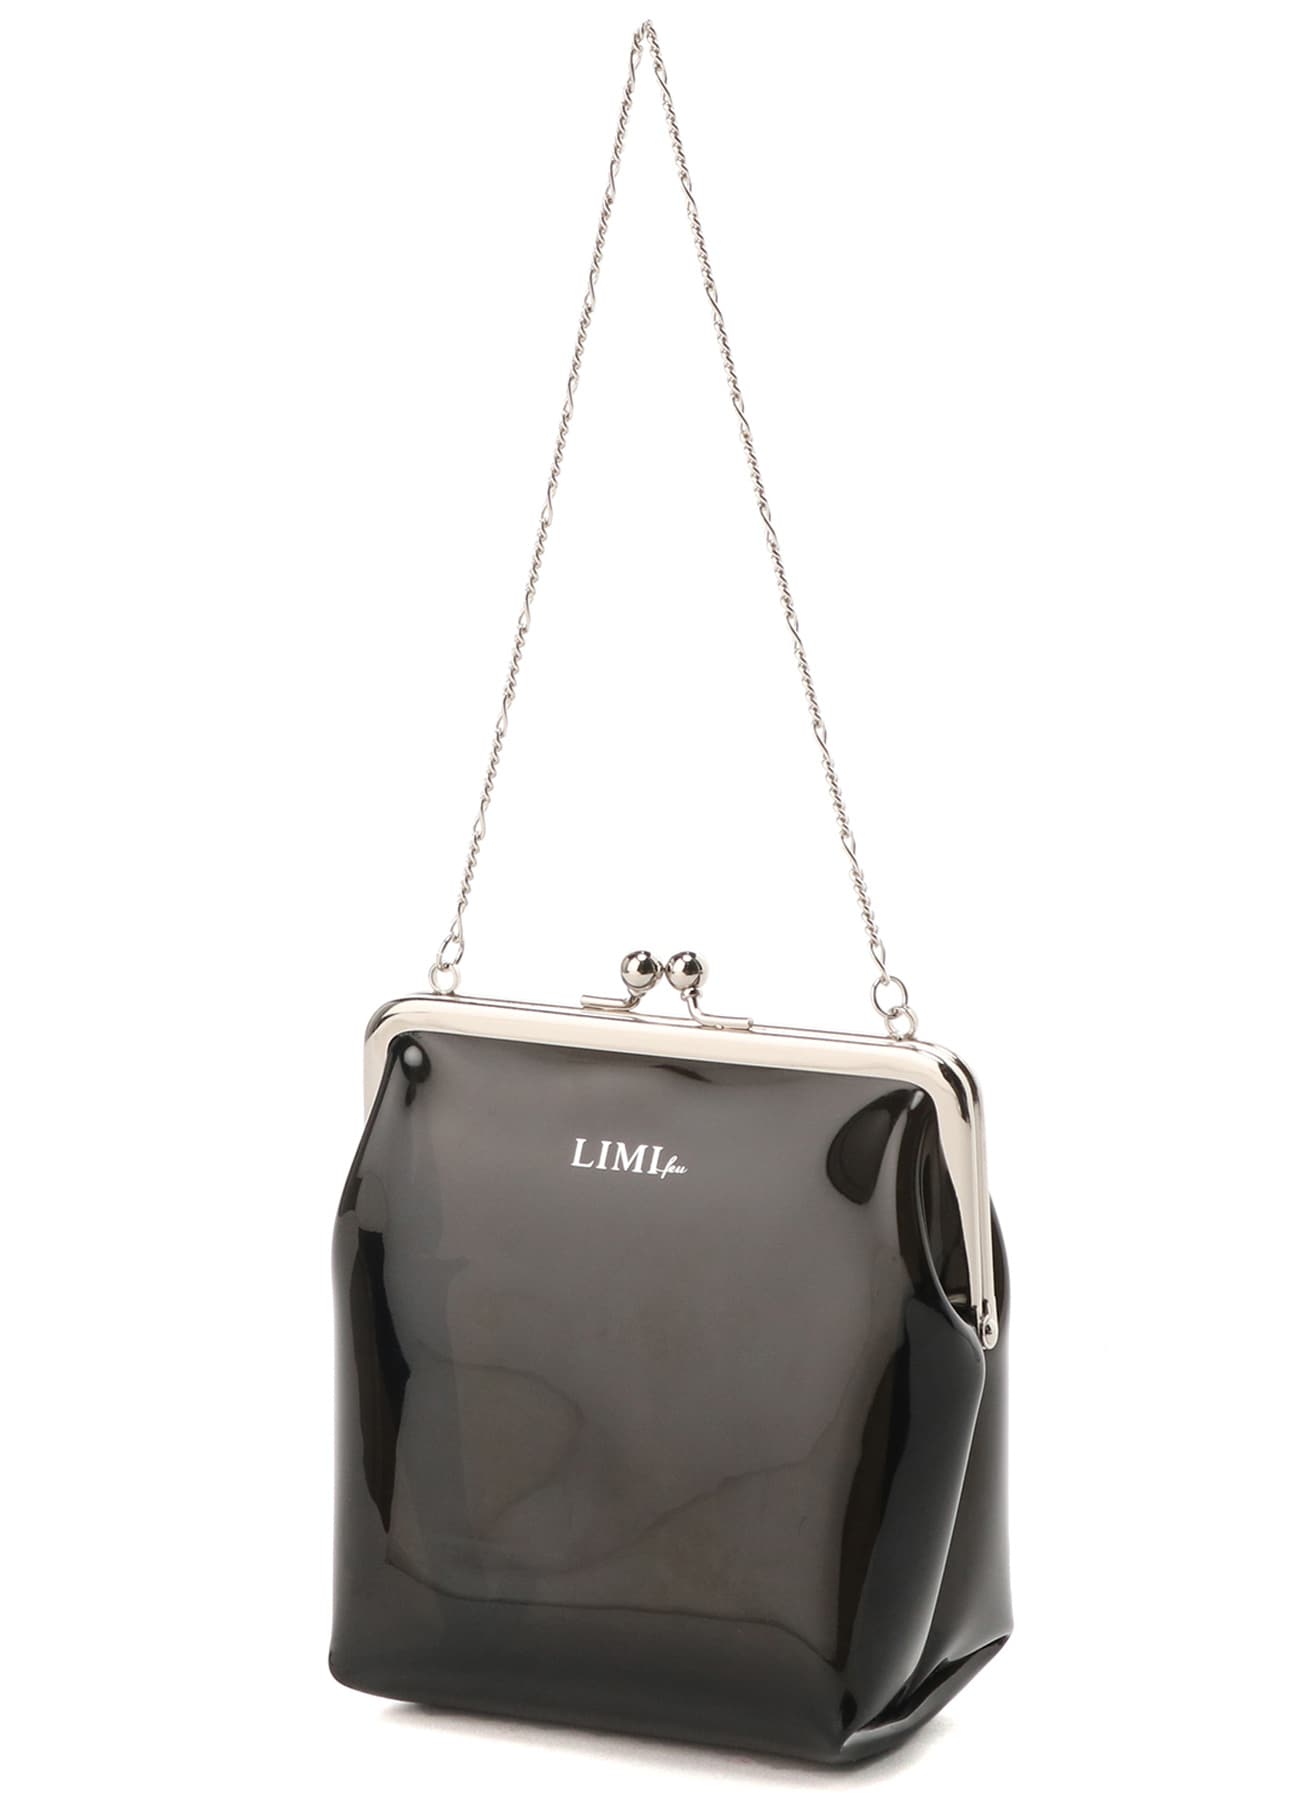 Tulle + PVC Combi Convenience Bag